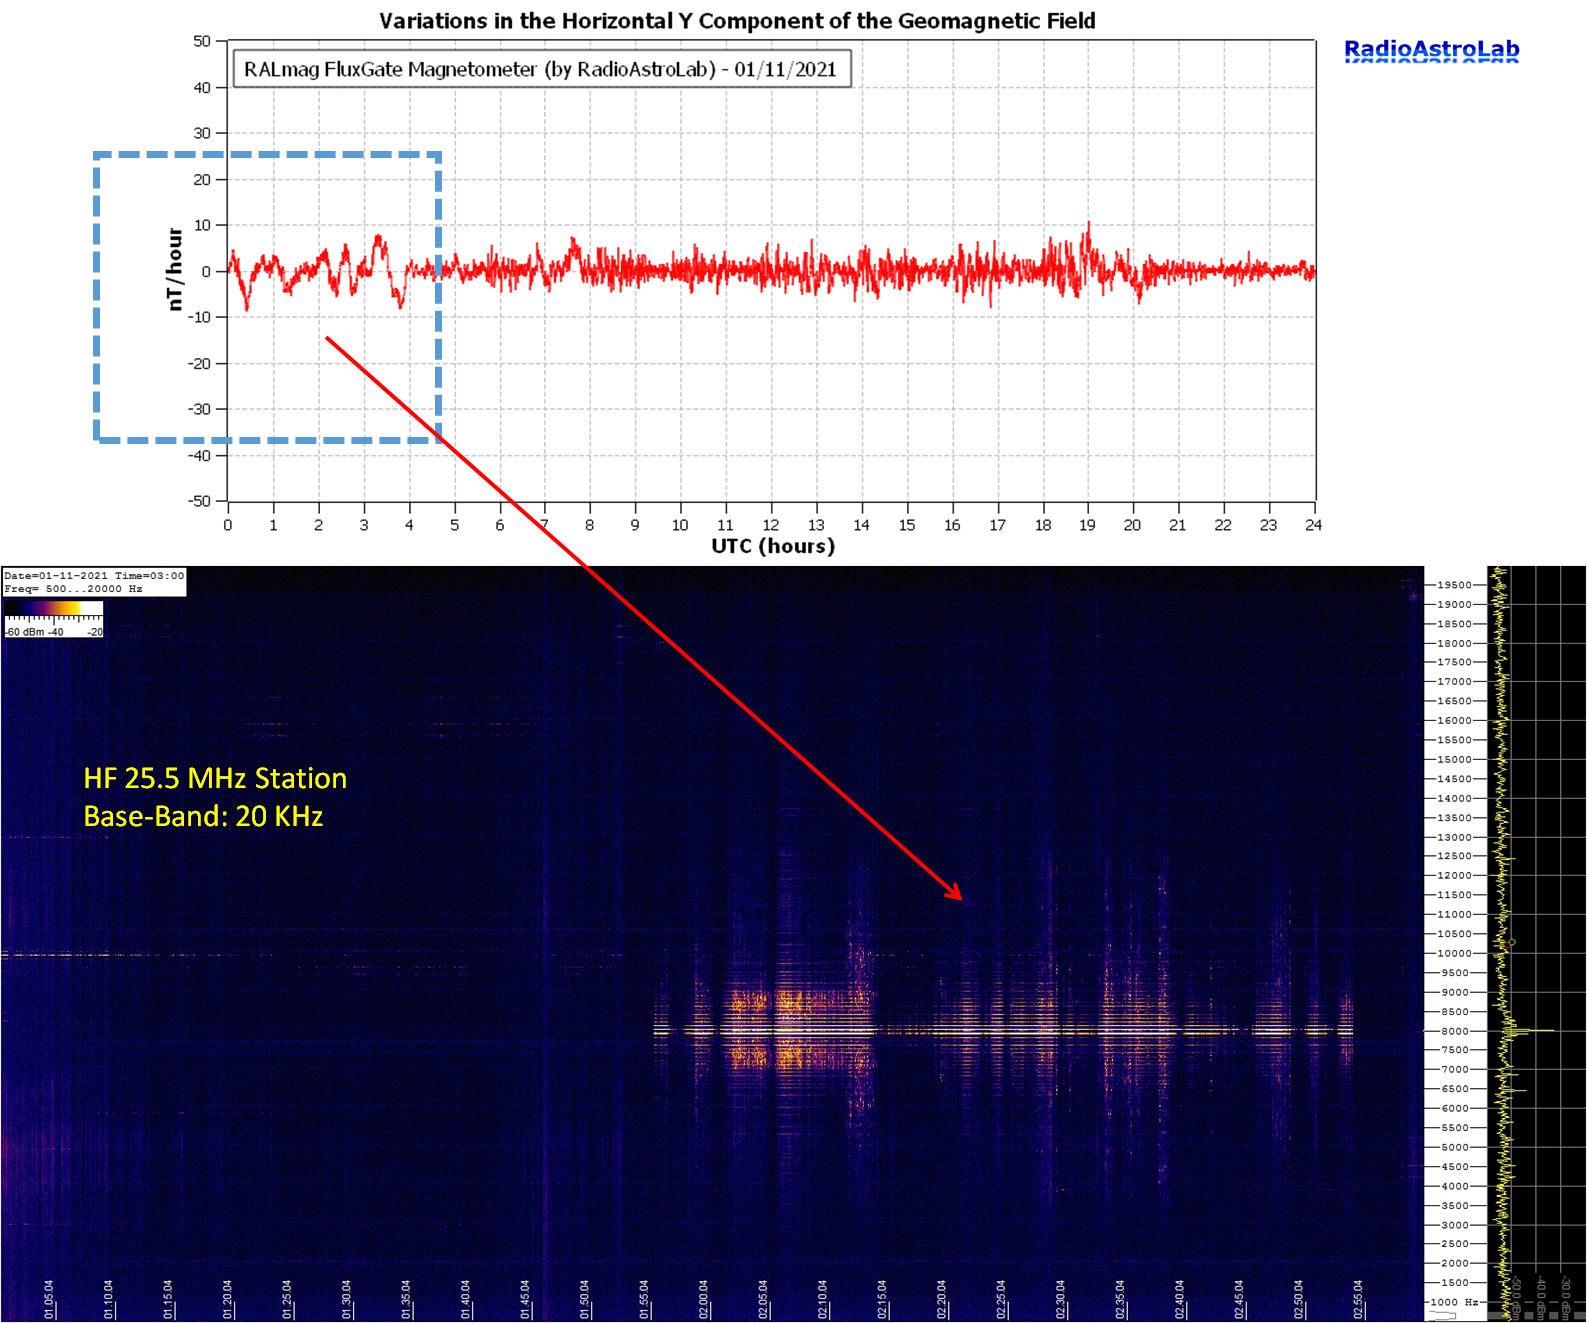 Confronto fra la perturbazione geomagnetica catturata durante le prime ore del 1 novembre 2021 e il livello di rumore elettromagnetico registrato in banda HF (frequenza 25.5 MHz - larghezza di banda 20 kHz).